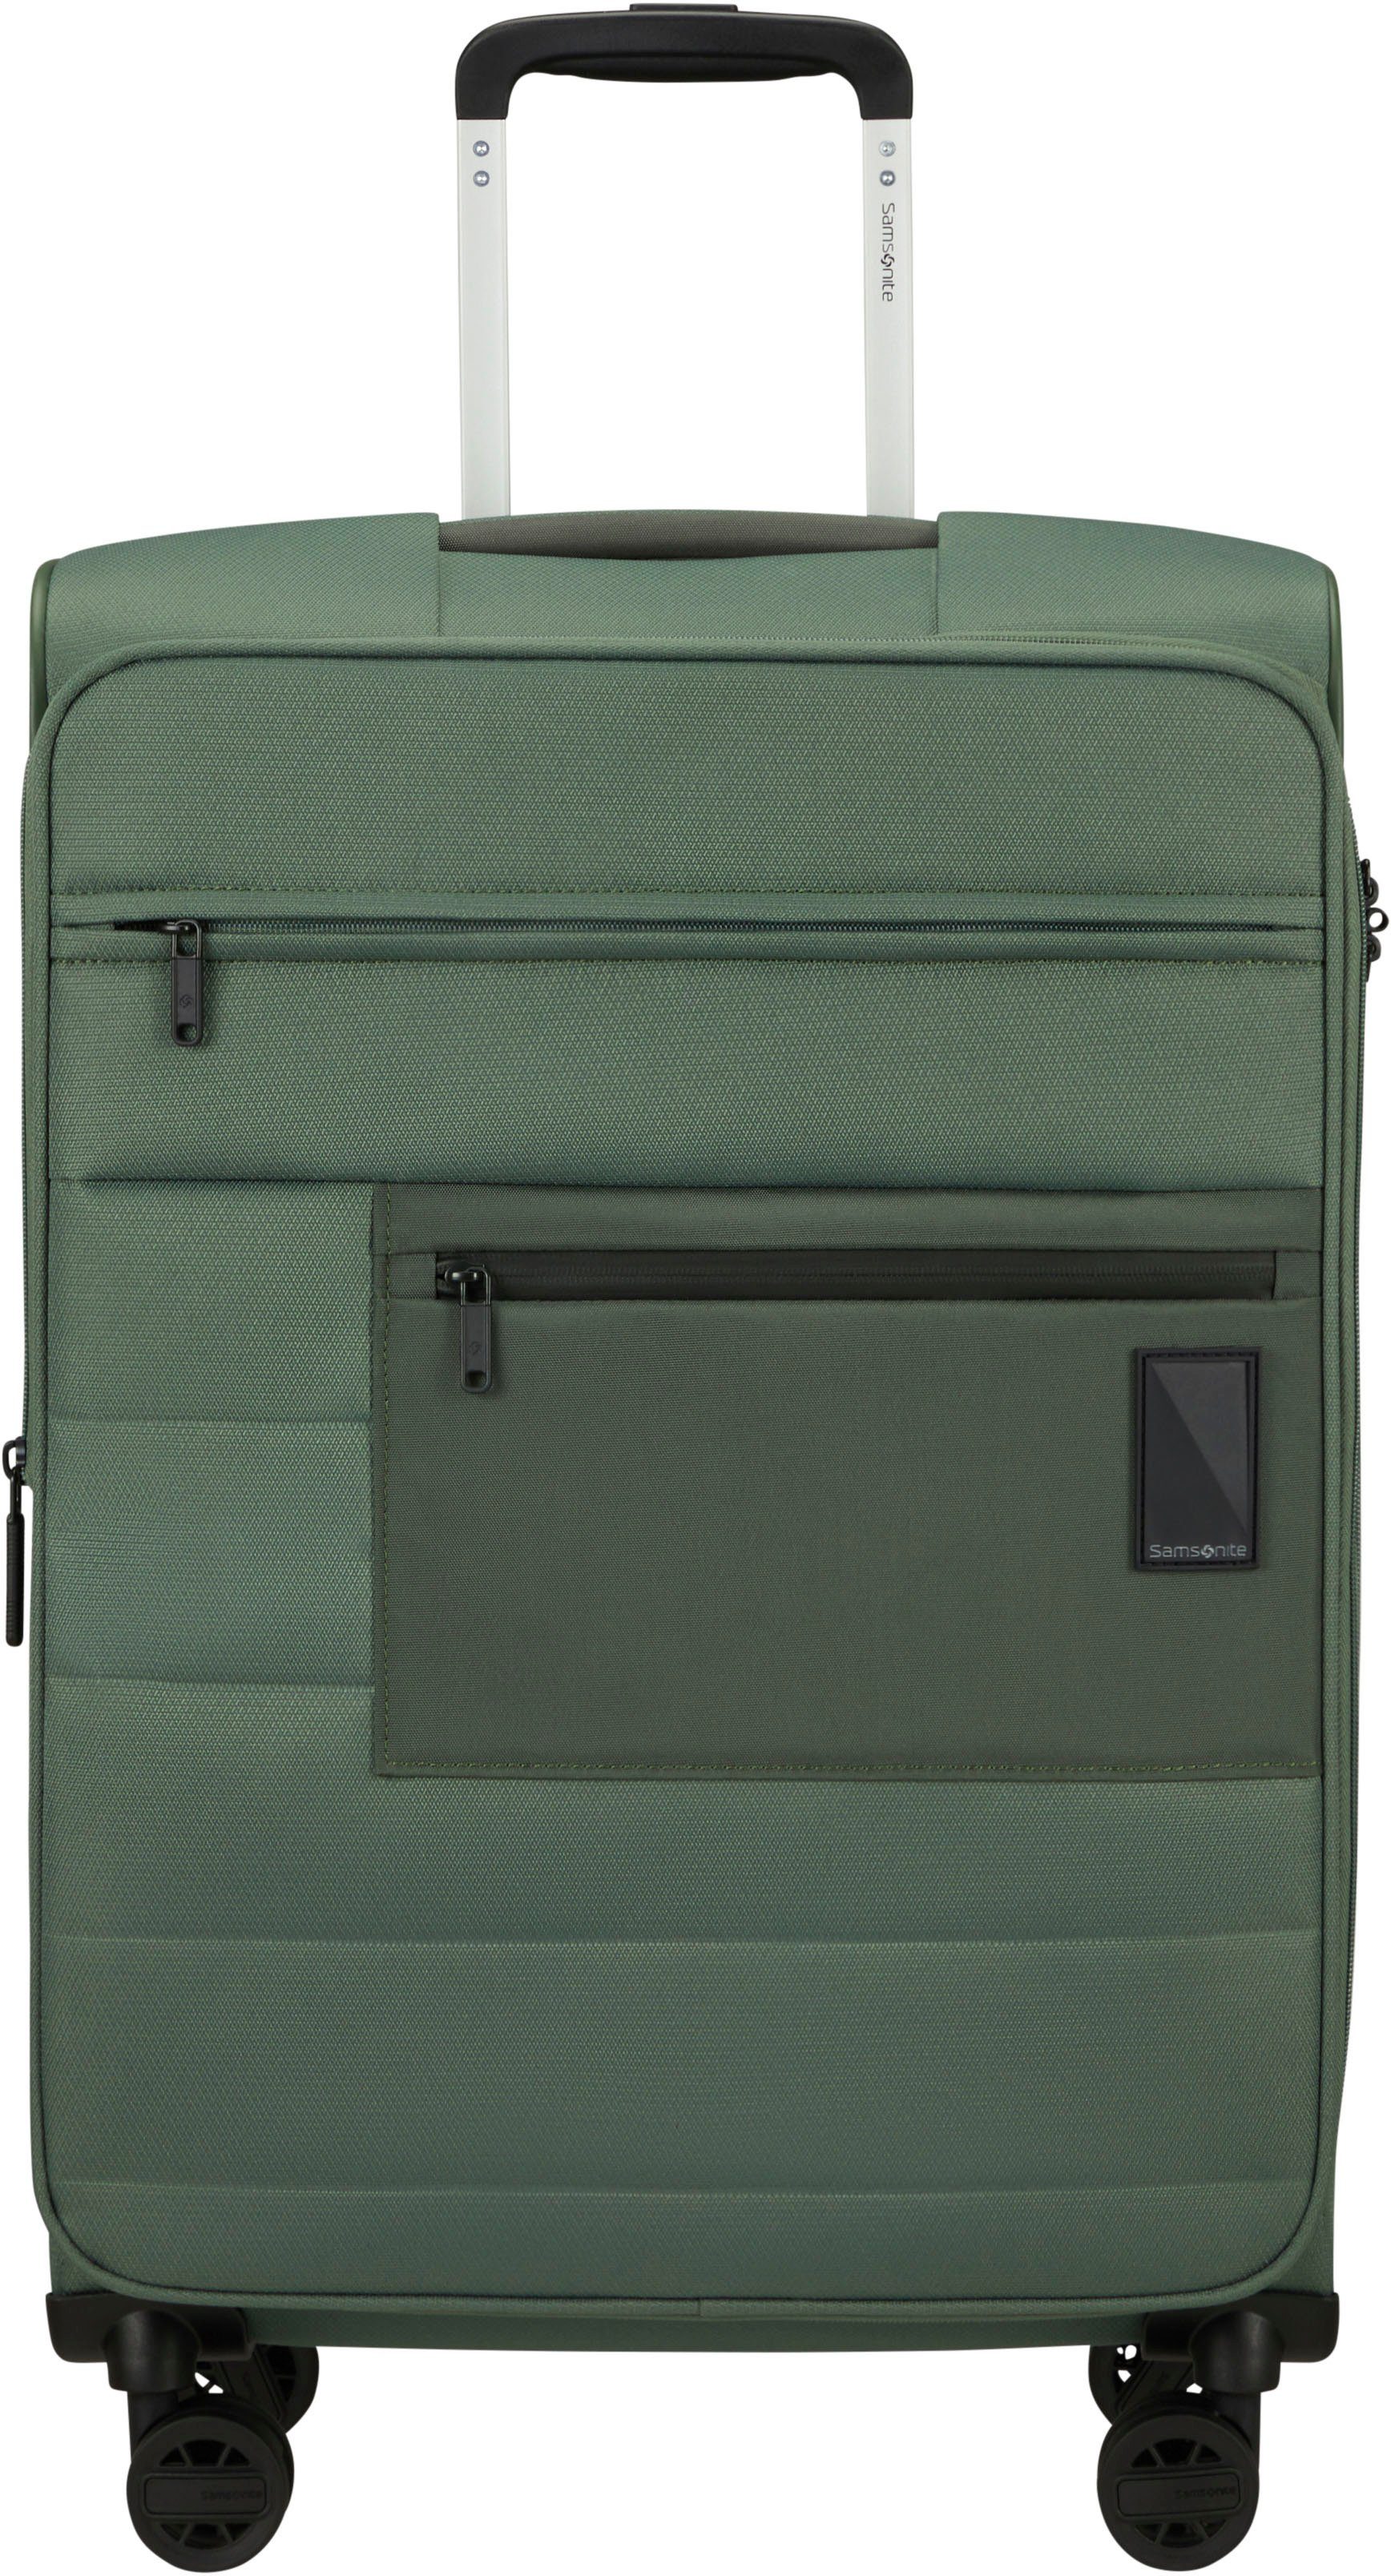 Samsonite Weichgepäck-Trolley Vacay, pistacho green, 66 cm, 4 Rollen, Koffer mittel groß Reisegepäck Volumenerweiterung TSA-Zahlenschloss